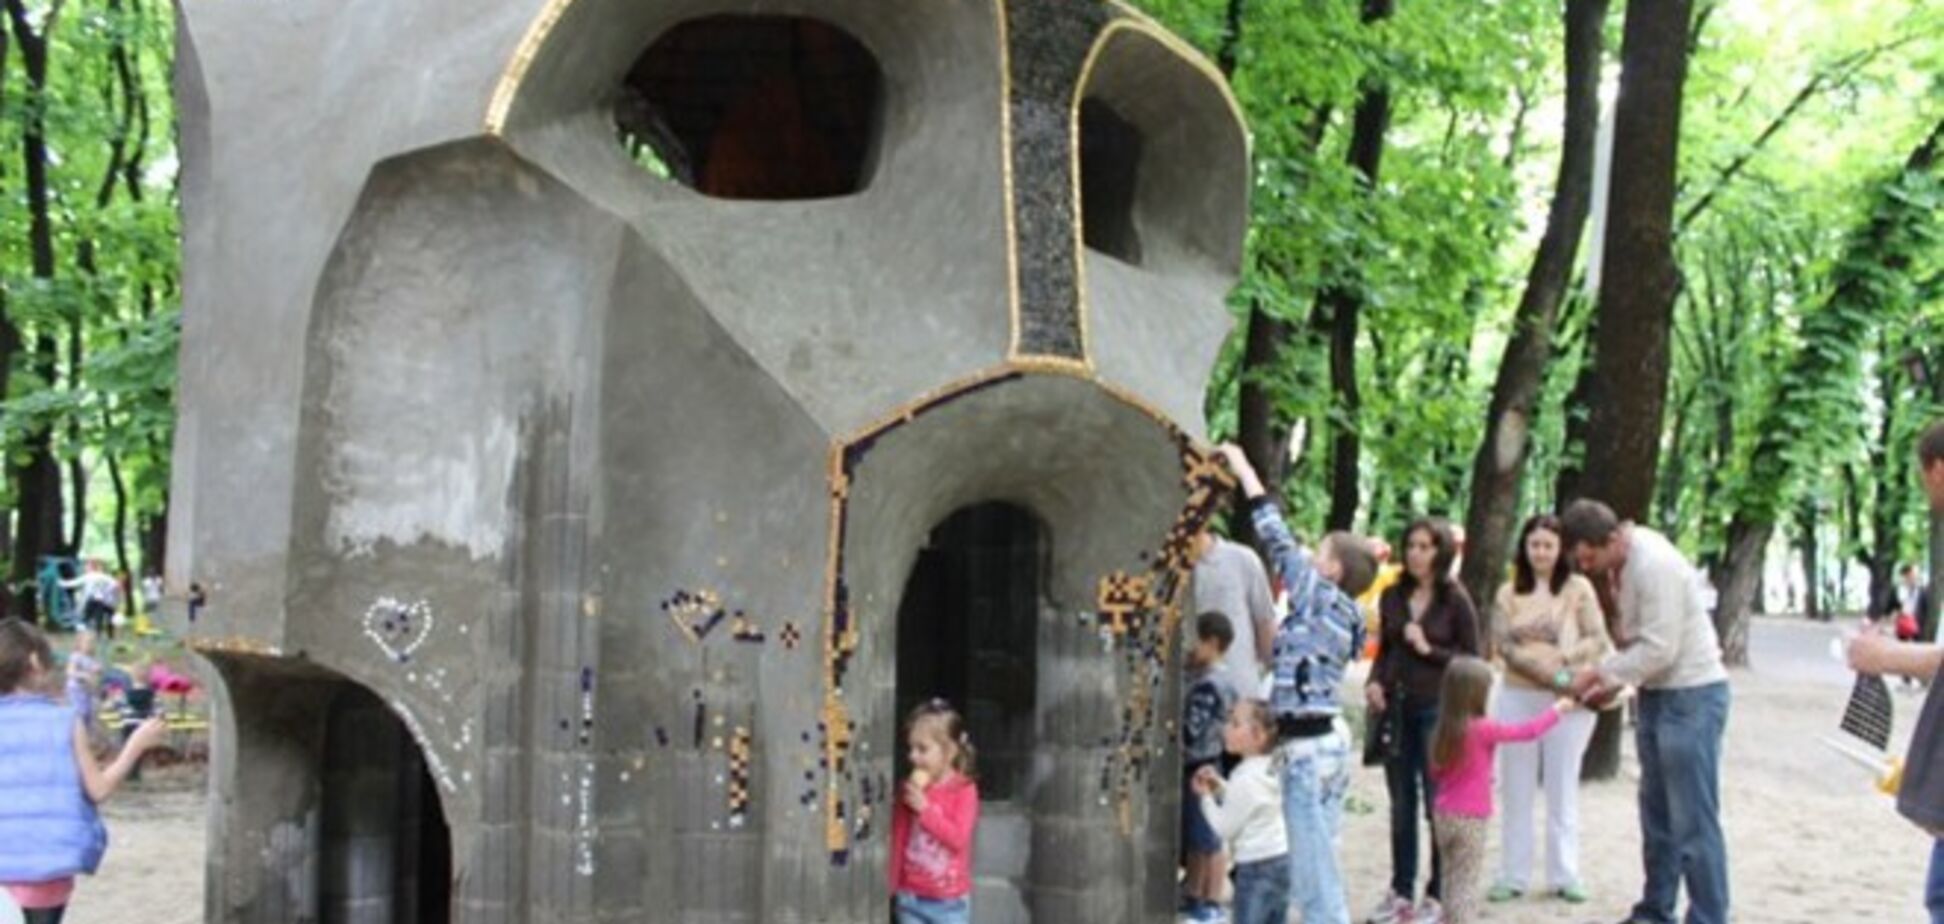 В парке имени Пушкина появилась уникальная сказочная скульптура и детская площадка